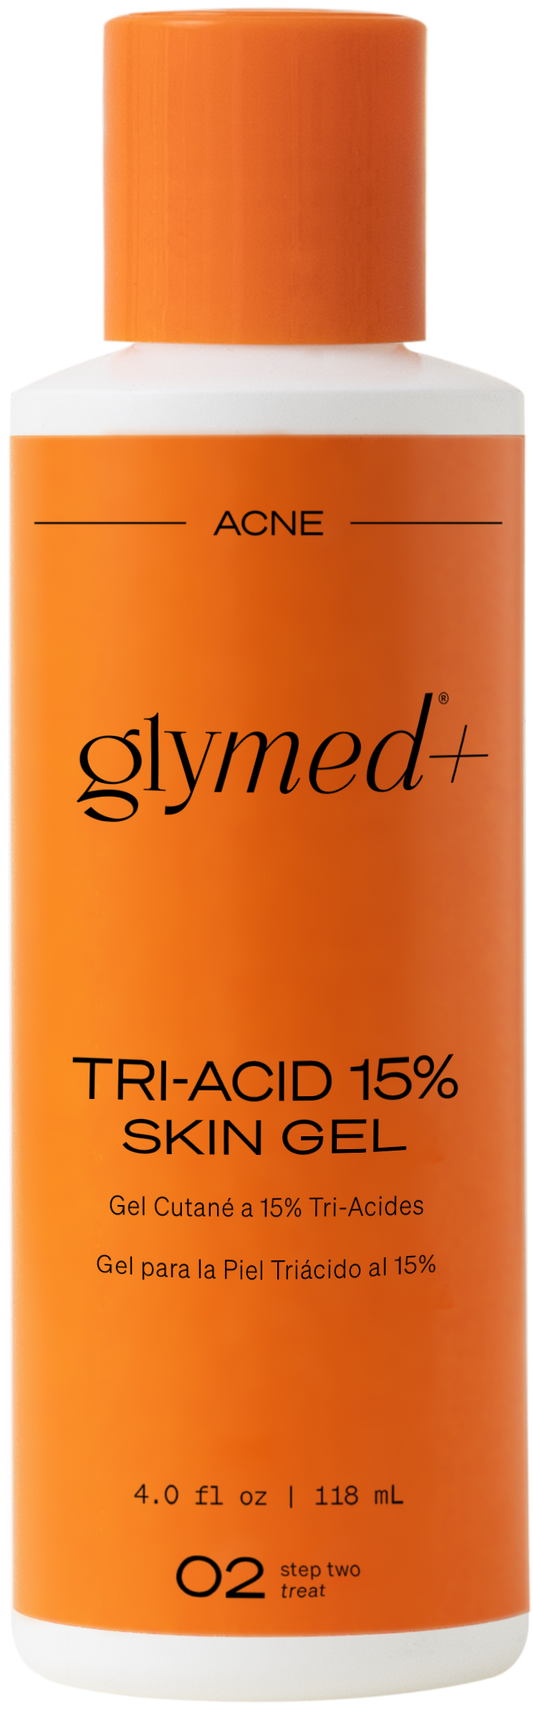 Tri-Acid 15% Skin Gel